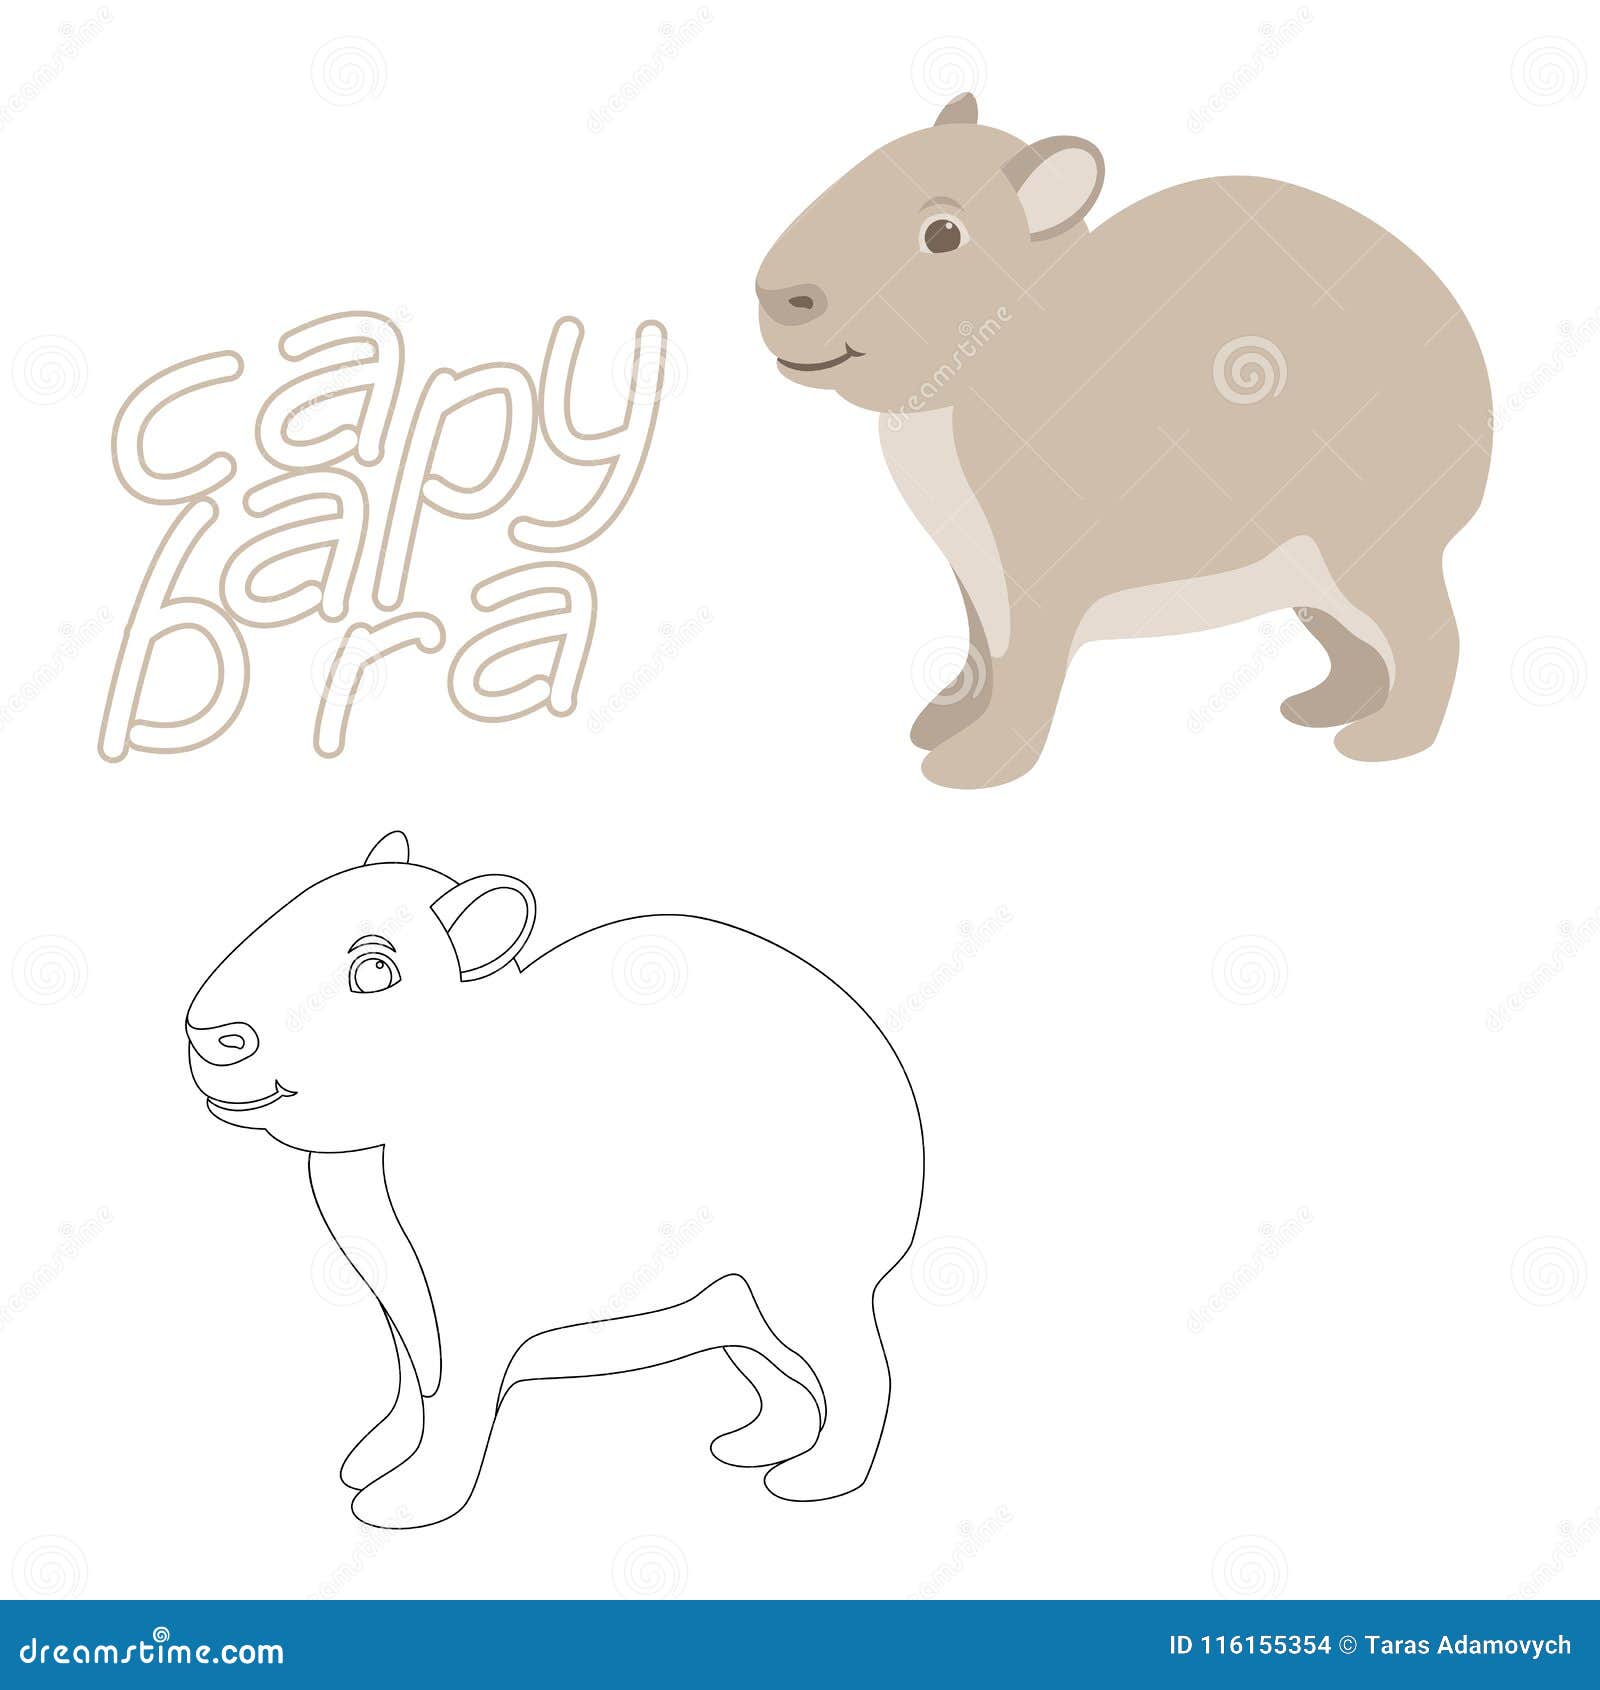 Capybara Coloring Book Vector Illustration Flat Style Profile Side Stock Vector - Illustration ...